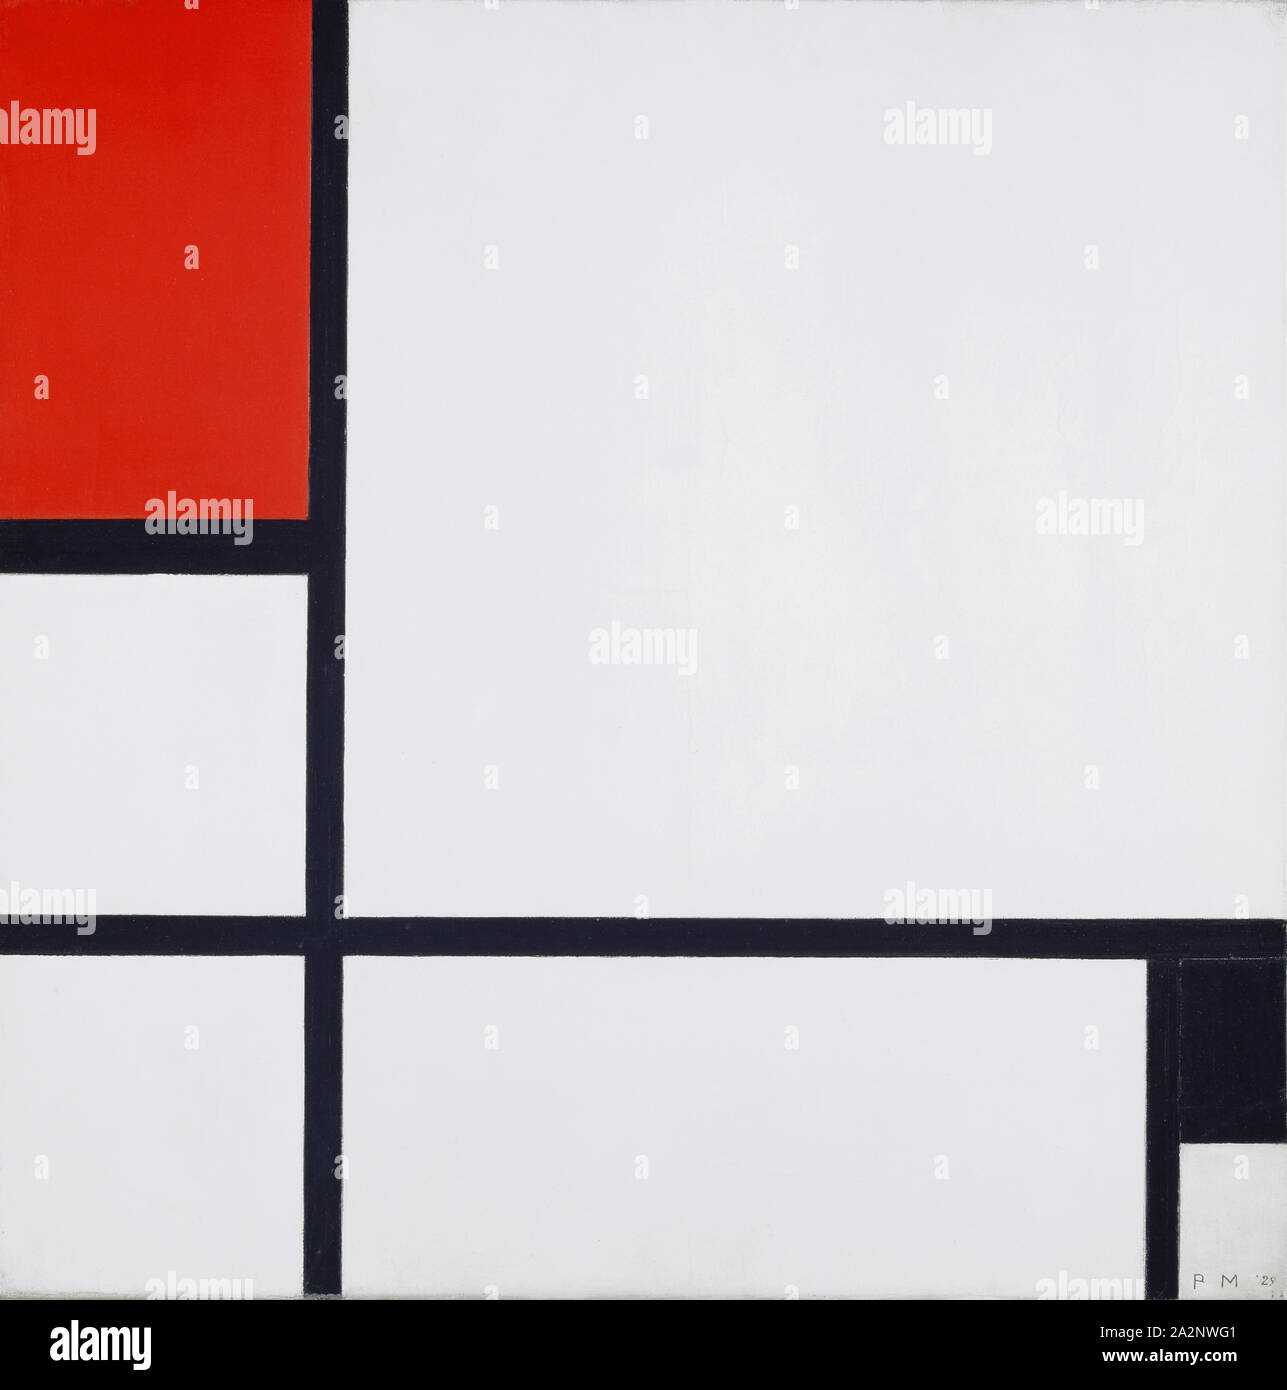 Composition no. I, avec rouge et noir, 1929, huile sur toile, 52,3 x 52,2 cm, monogrammé et daté en bas à droite : P M '29, Piet Mondrian, Amersfoort 1872-1944 New York/N.Y Banque D'Images